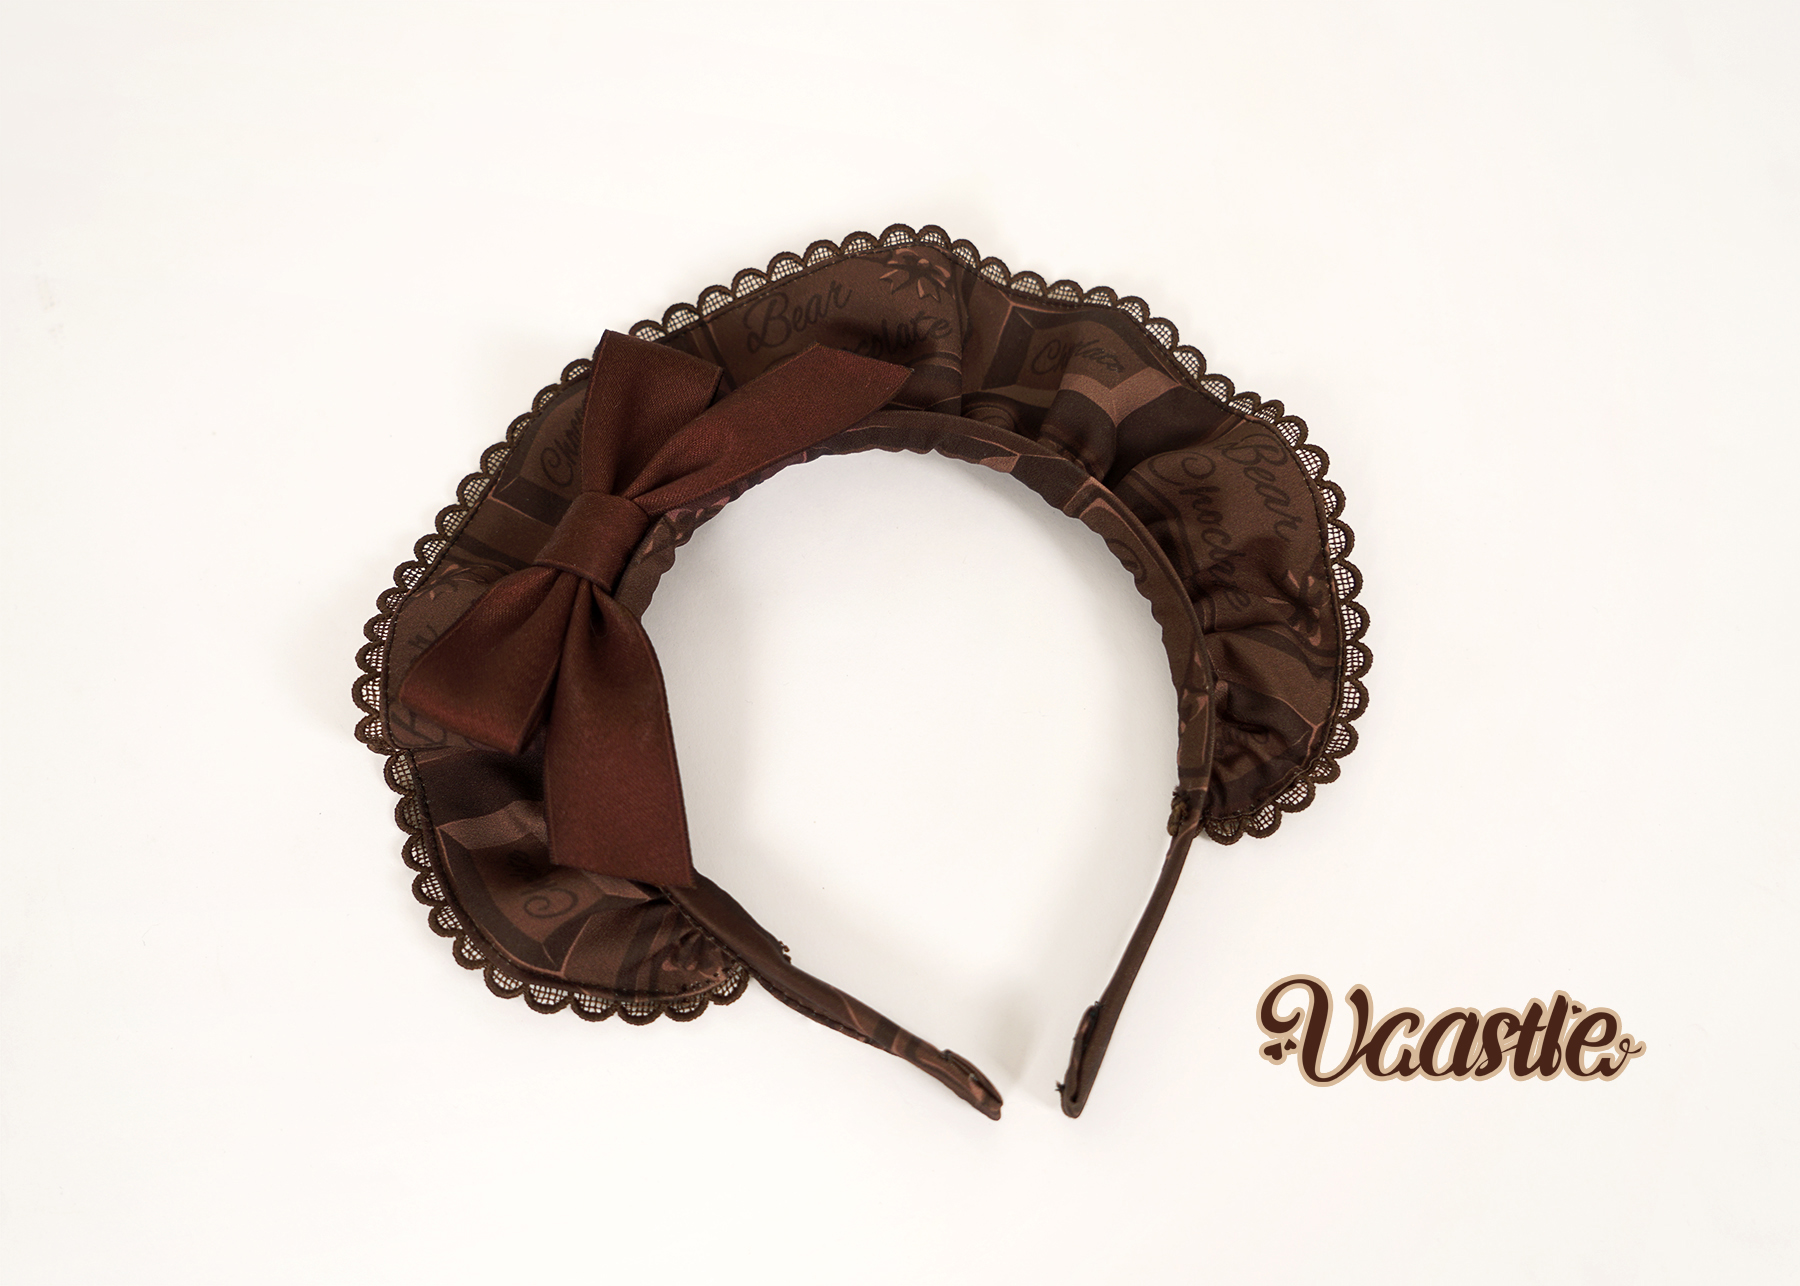 Wonderland Creations - Louis Vuitton Mini Hairbow Or Headband